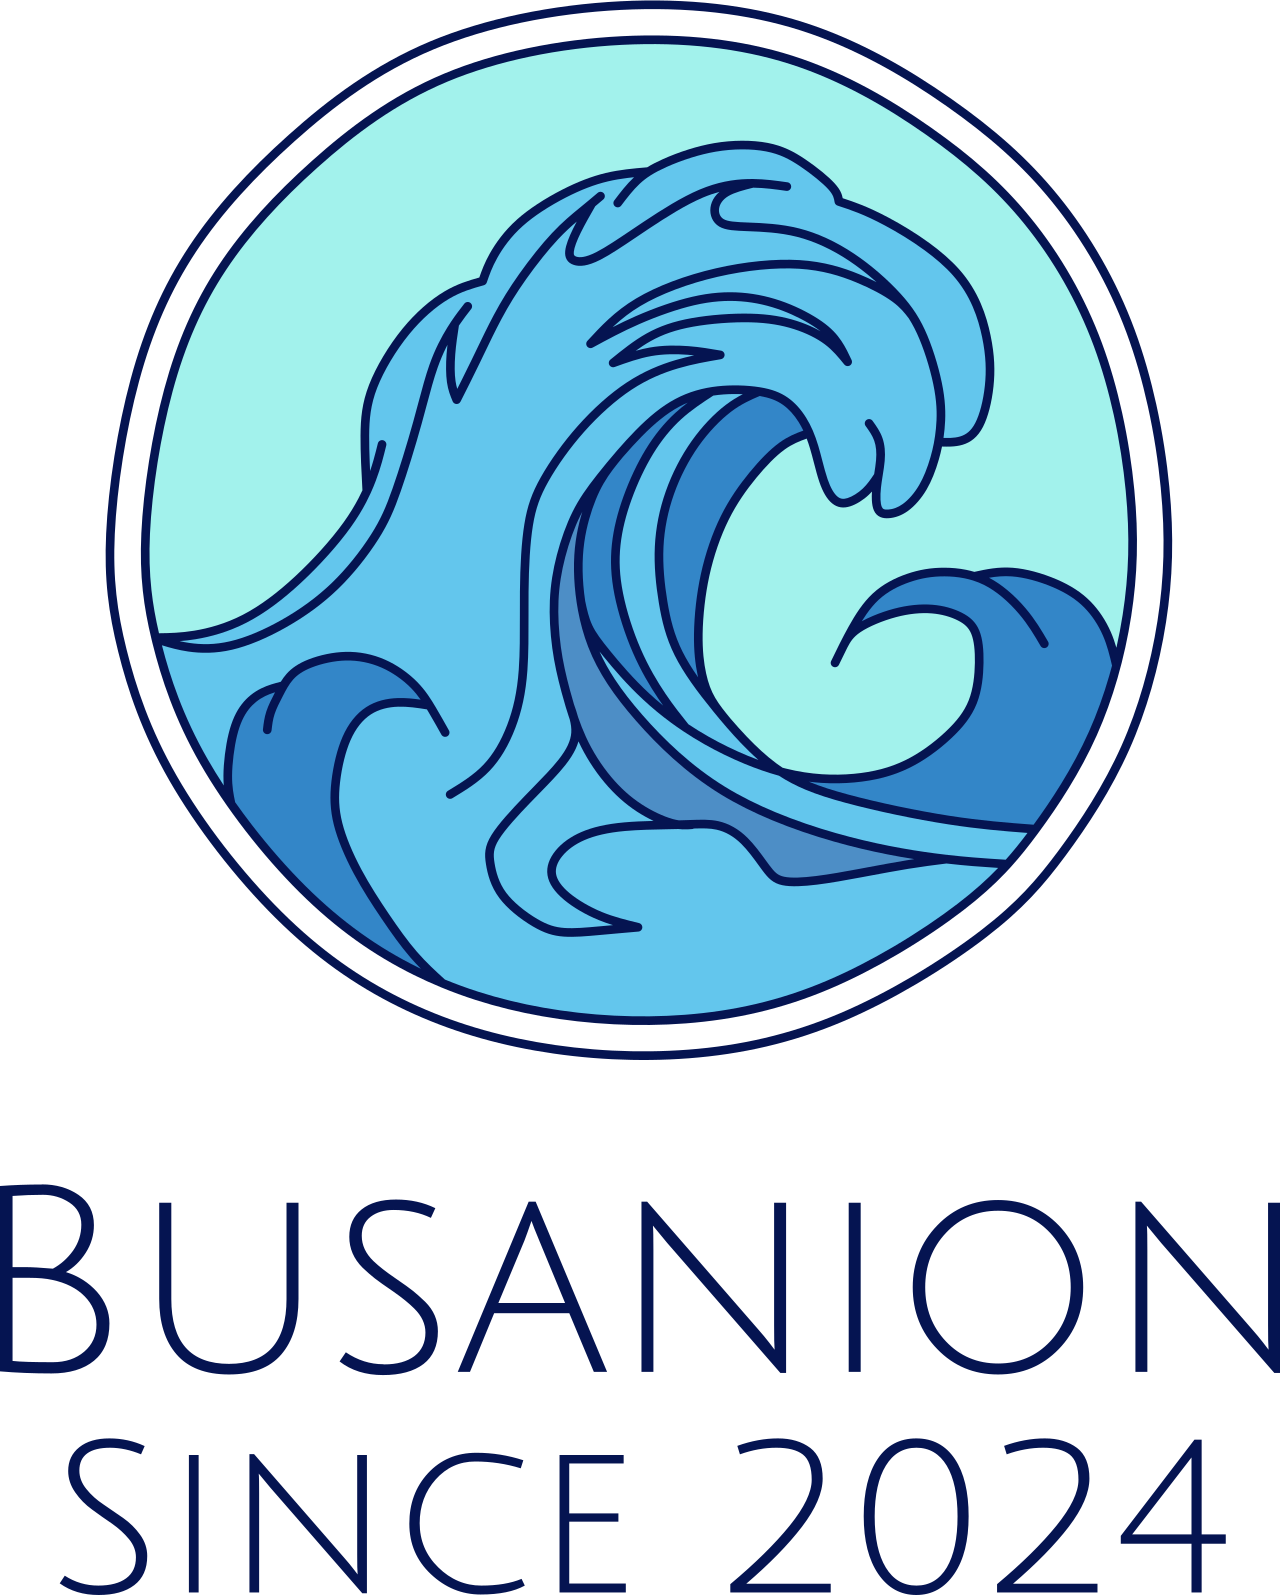 Busanion's logo